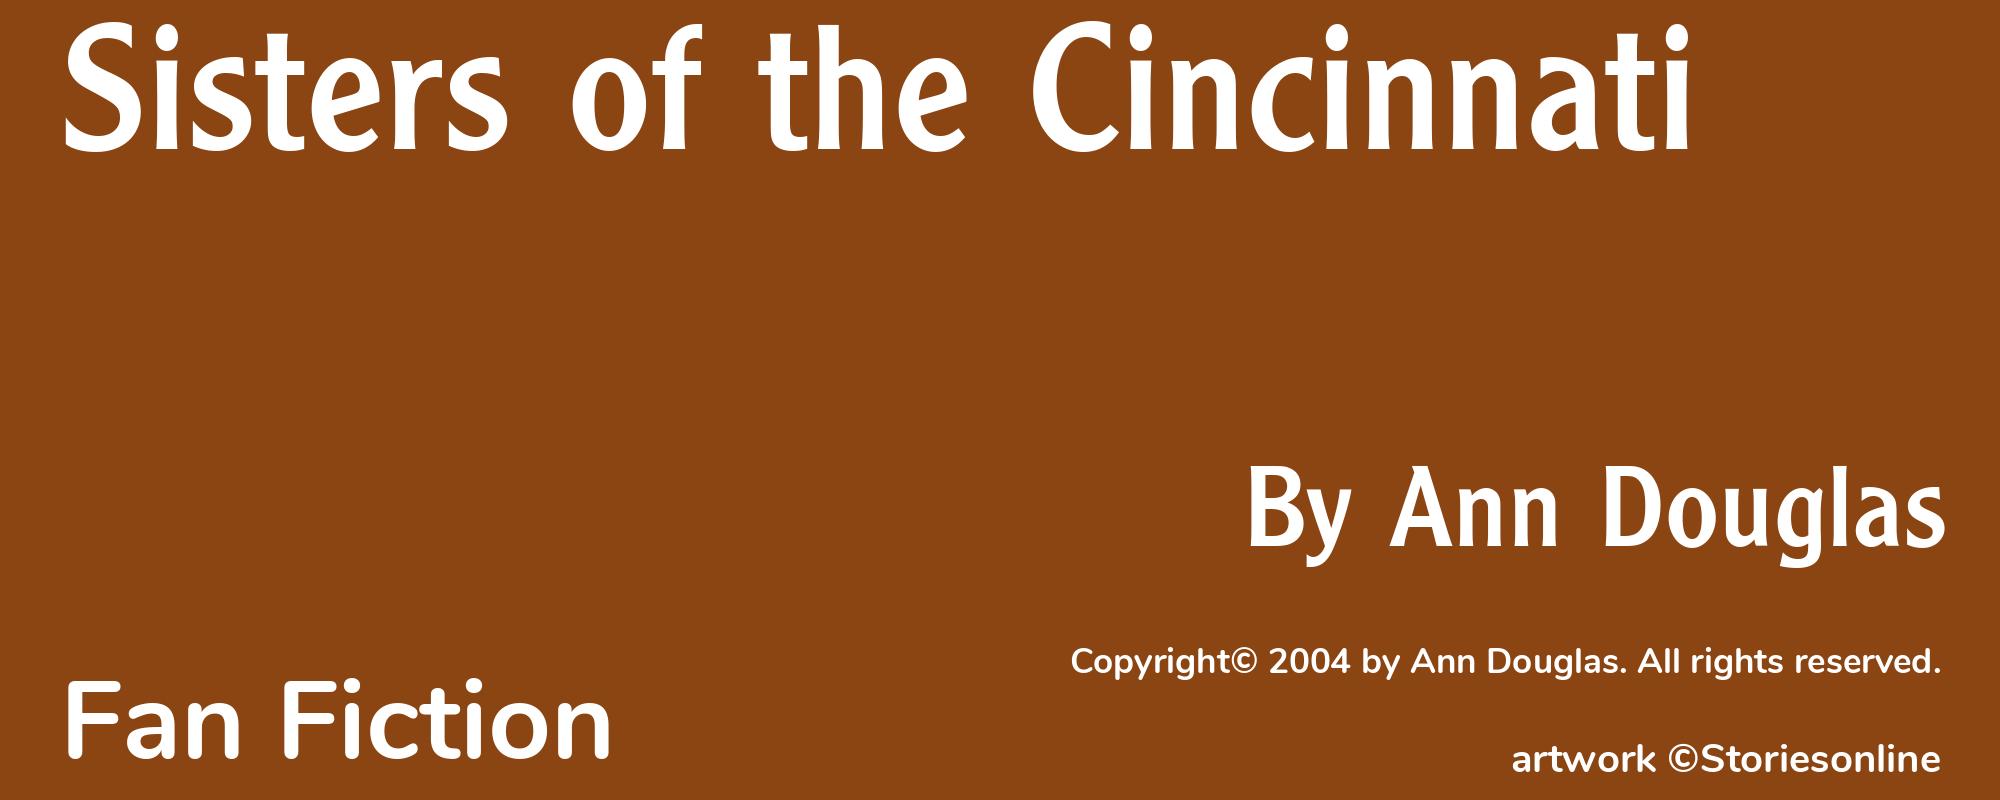 Sisters of the Cincinnati - Cover